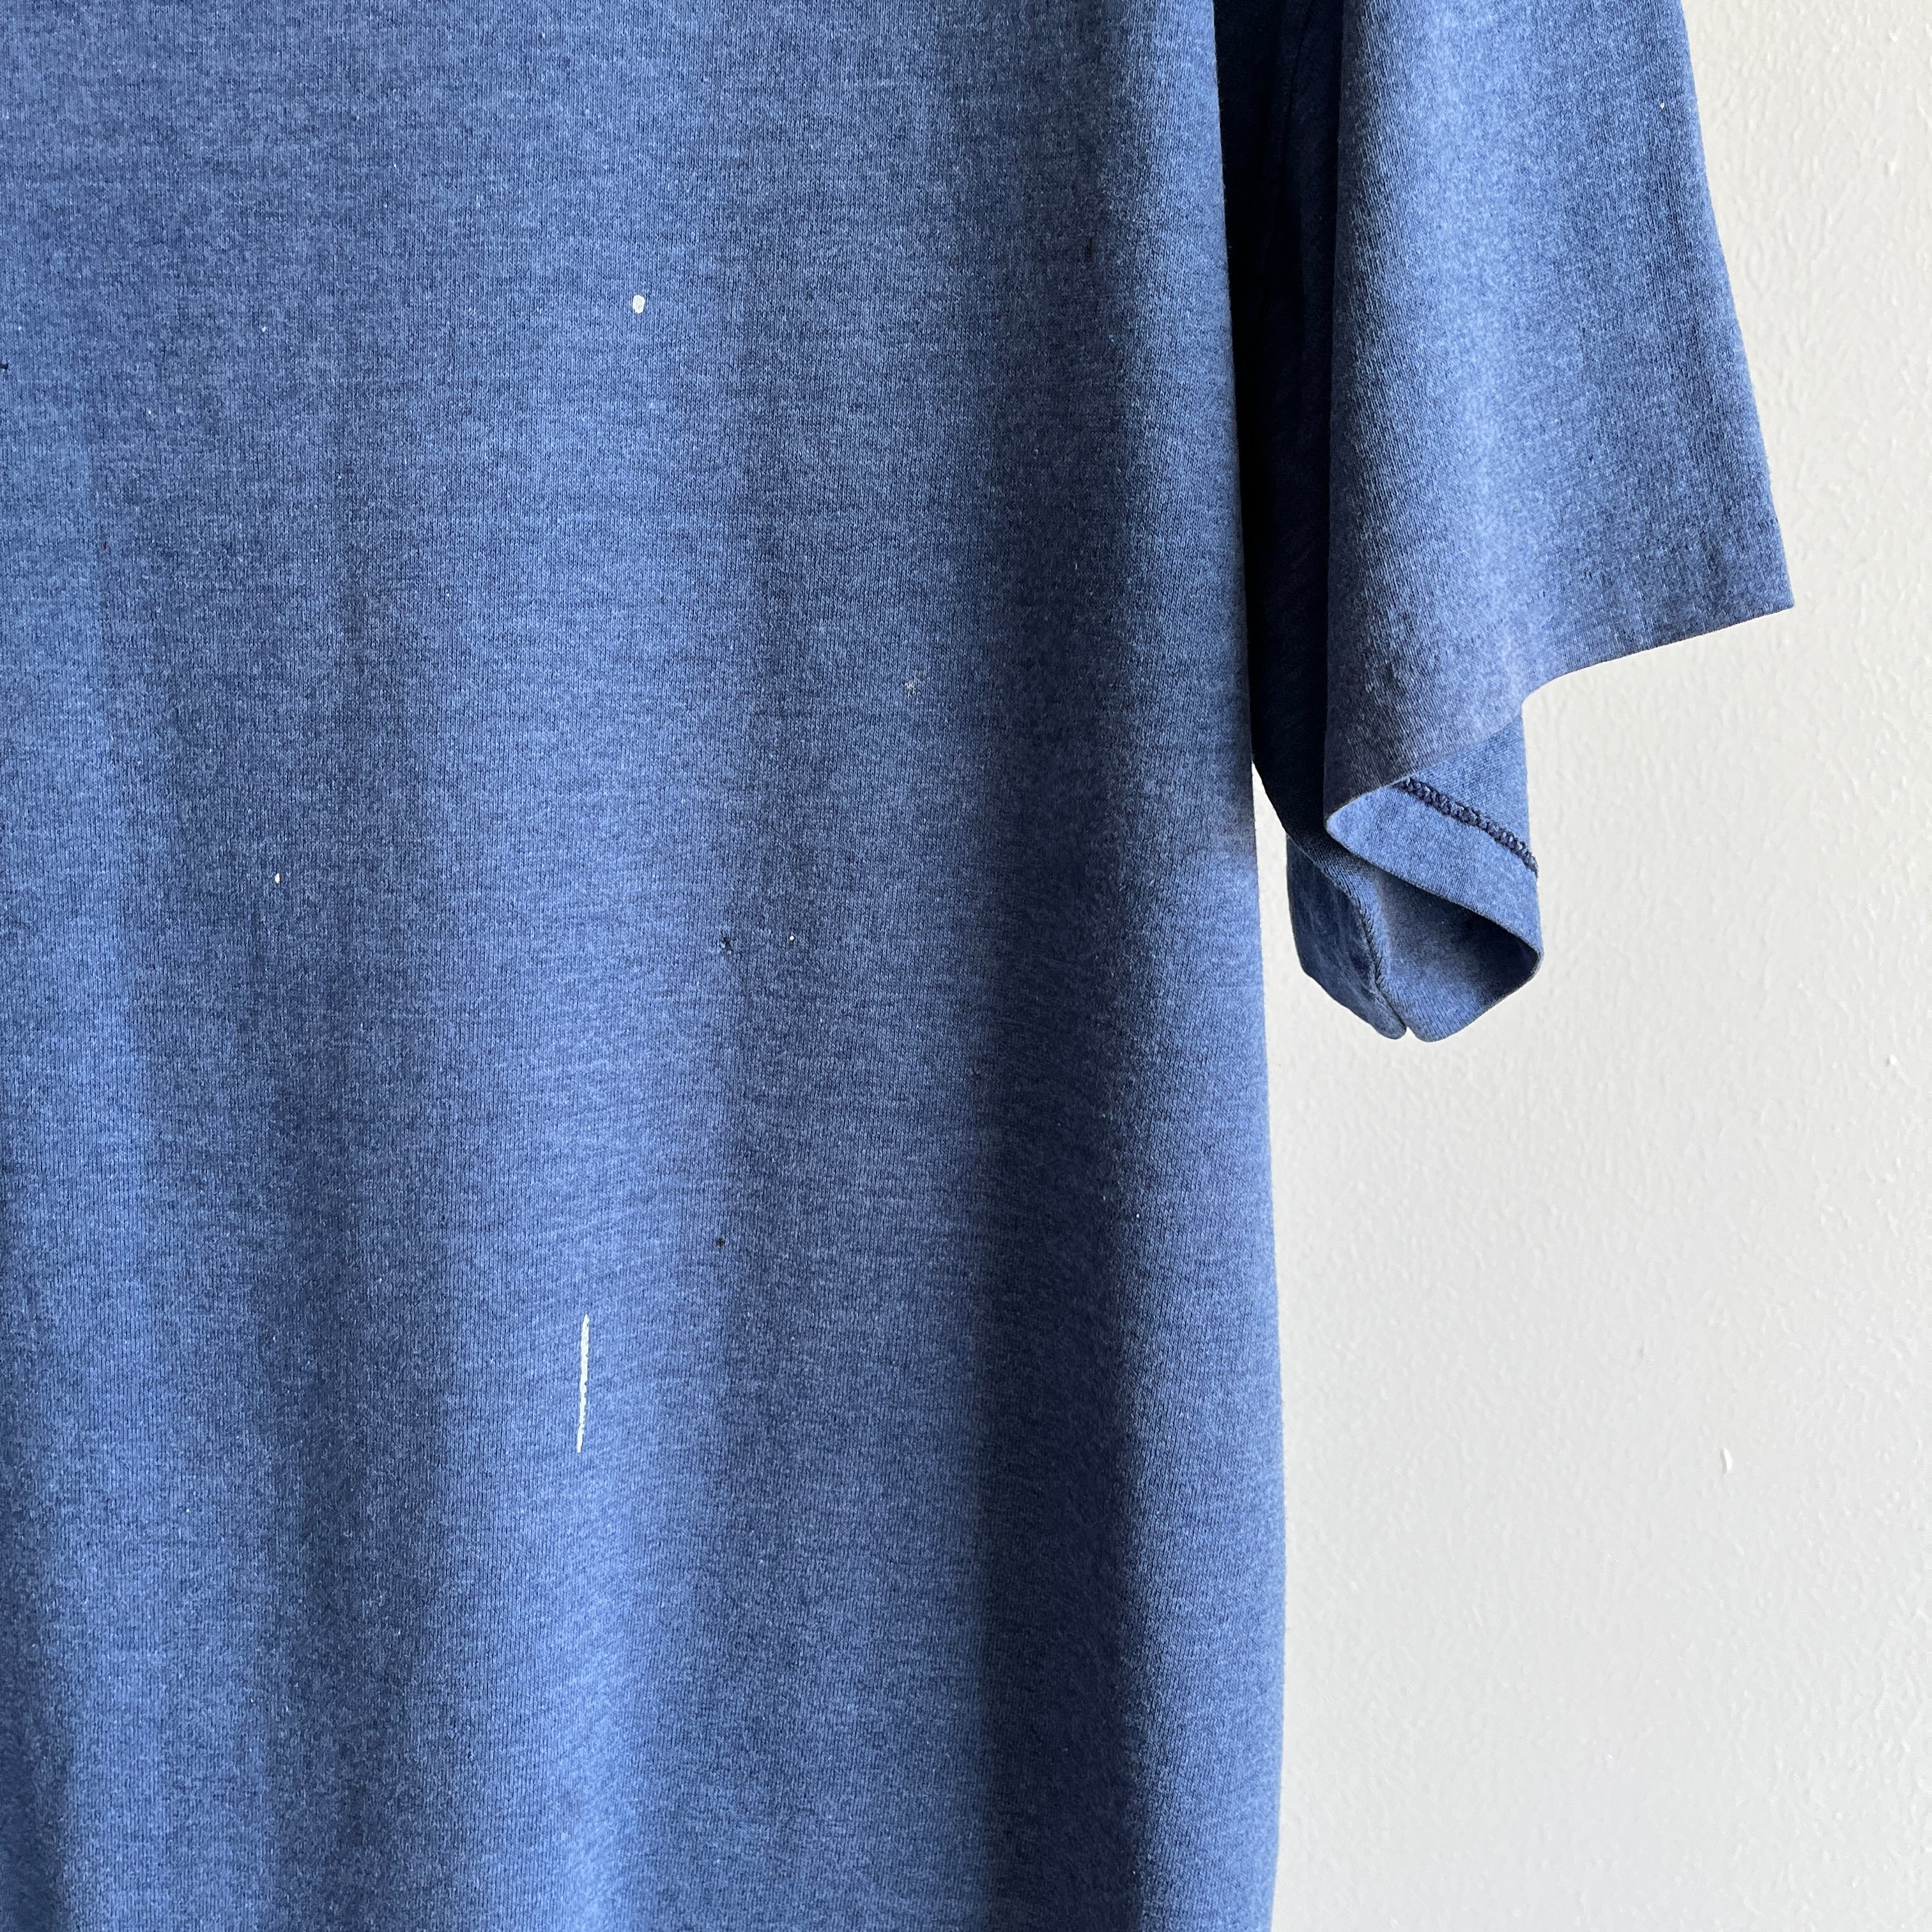 T-shirt extra long bleu marine teinté de peinture 1990/00s